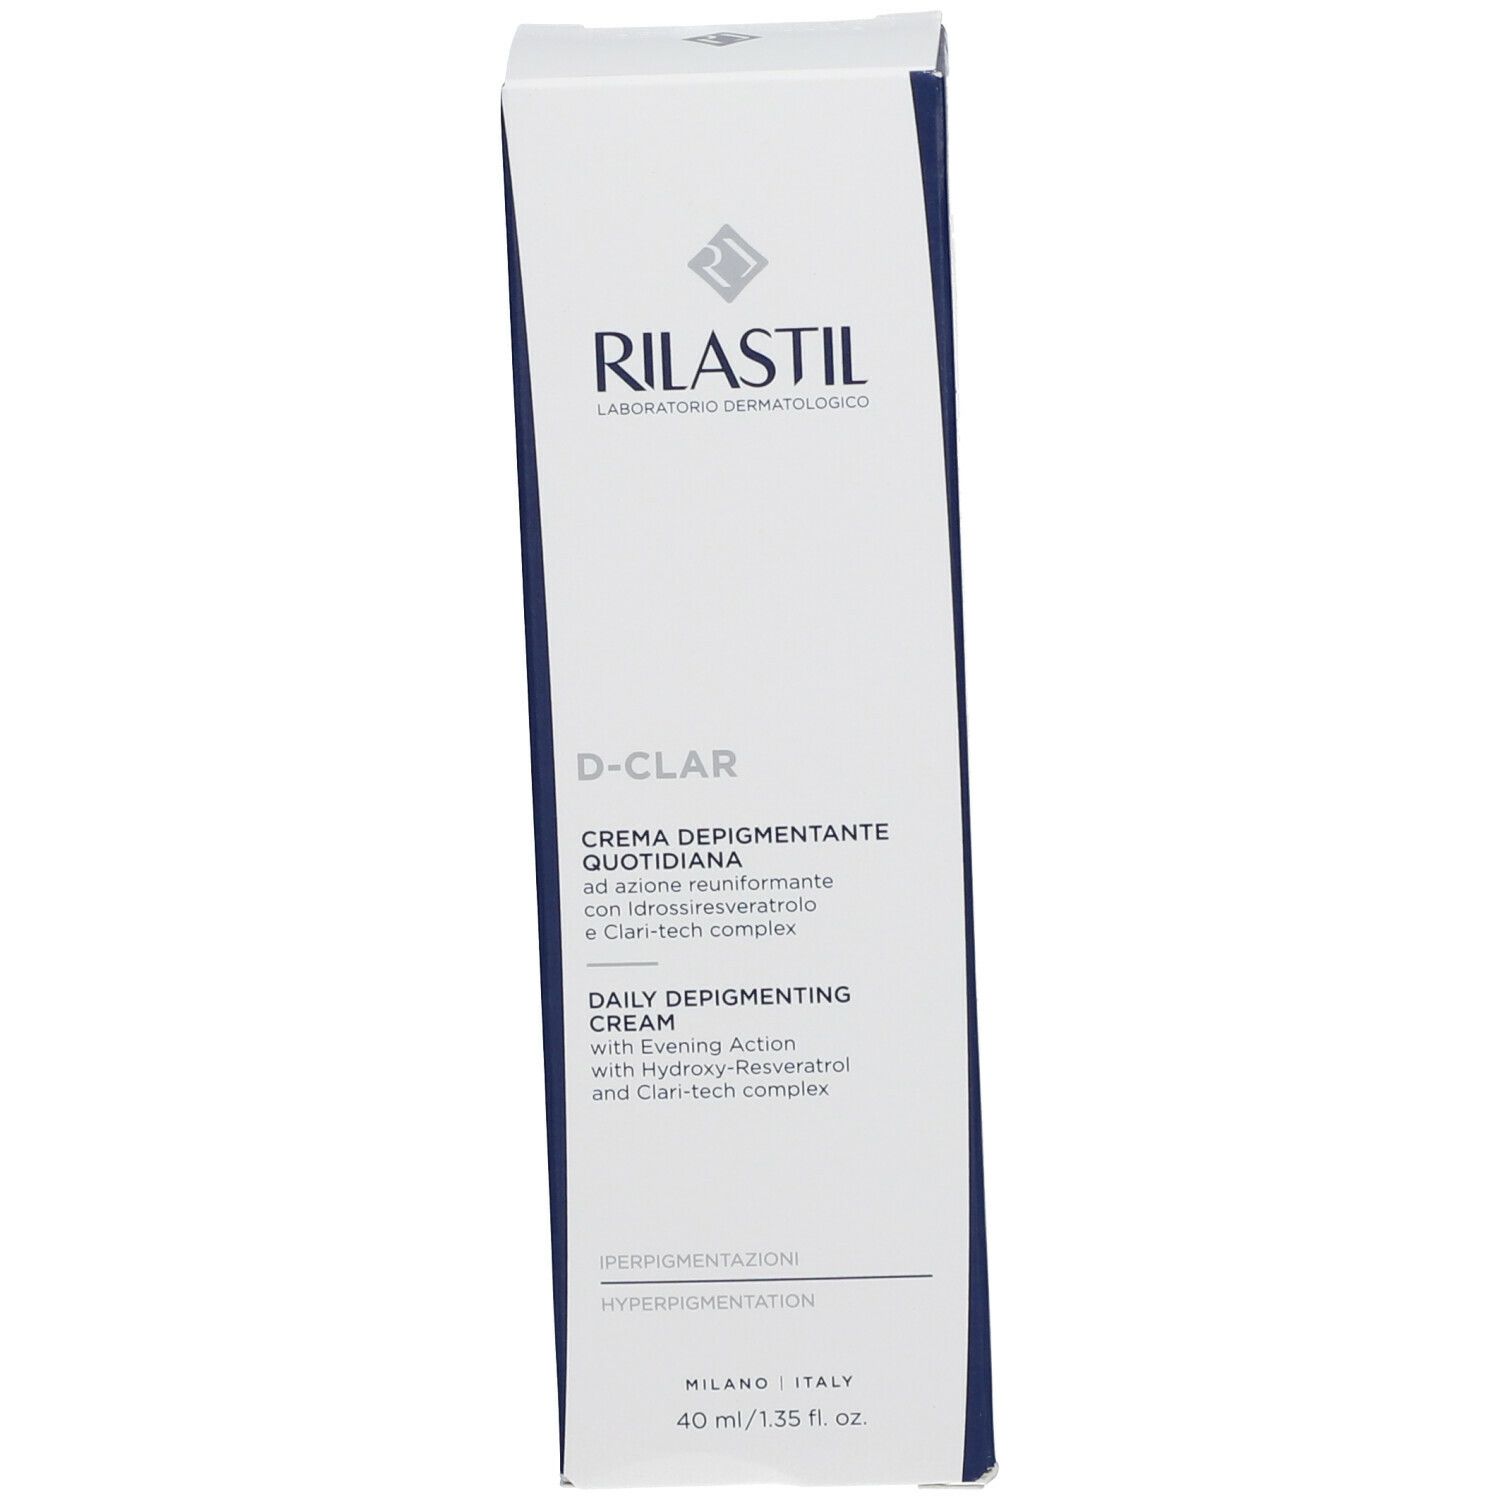 RILASTIL® D-Clar Crema Depigmentante Quotidiana